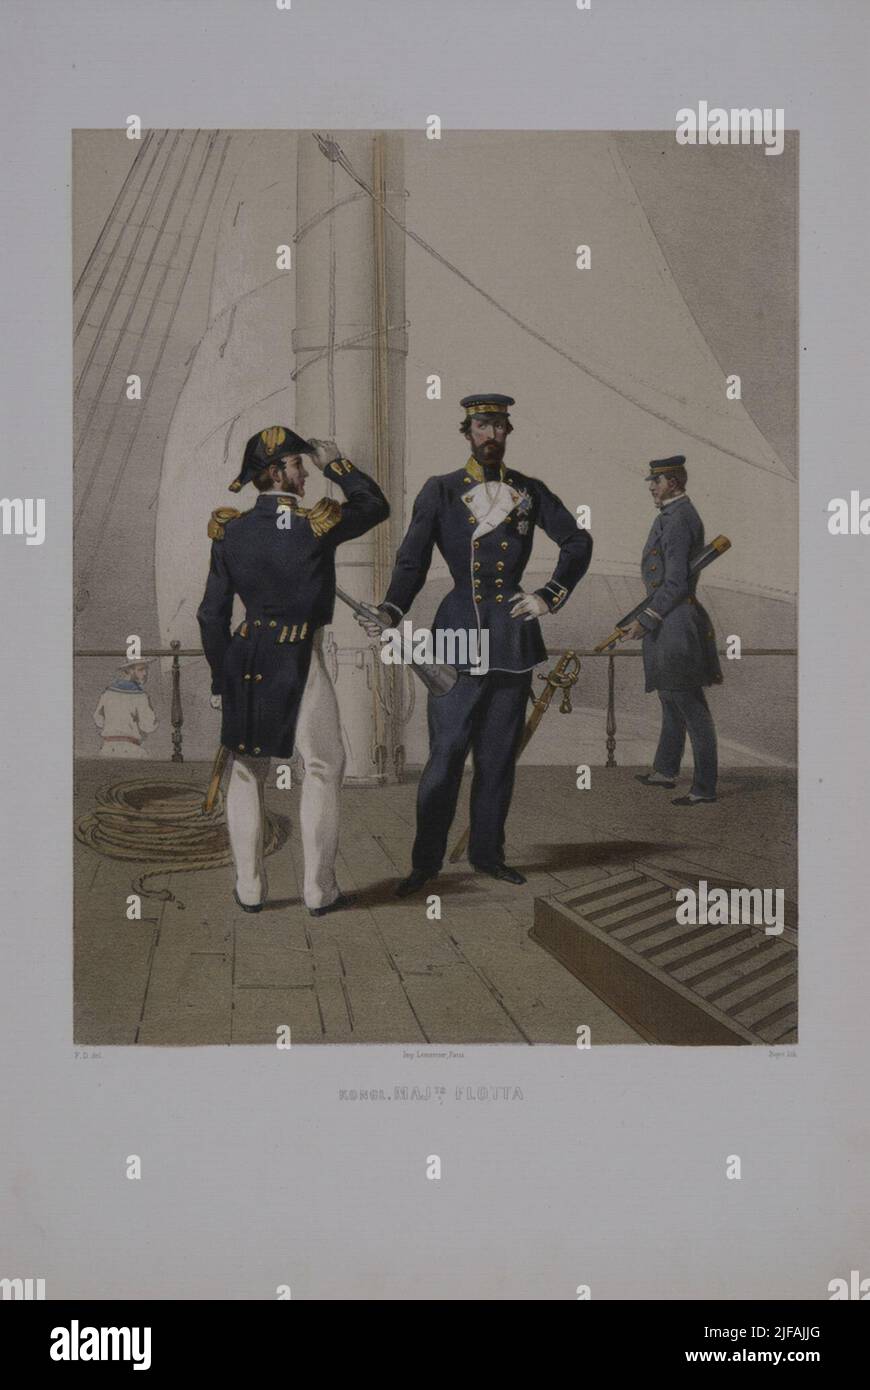 L'affiche avec l'uniforme de la flotte. Impression postale en couleur par l'original de Fritz von Dardel. Inclus dans la collection d'affiches les uniformes de l'armée suédoise et norvégienne, 1861-1863. Appartient aux archives de l'Armemuseum Banque D'Images